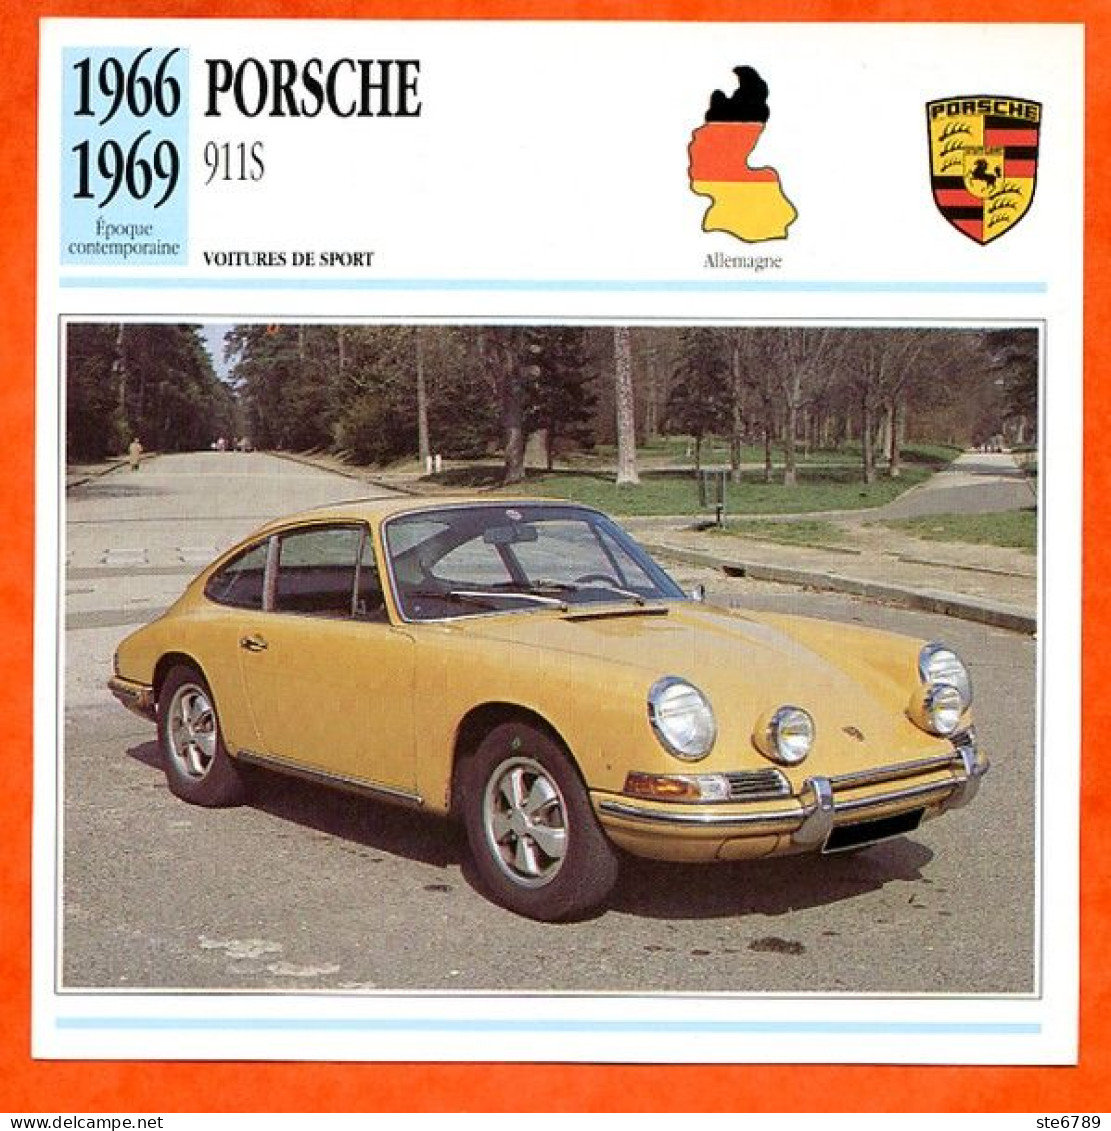 PORSCHE 911 S 1966 Voiture De Sport Allemagne Fiche Technique Automobile - Coches